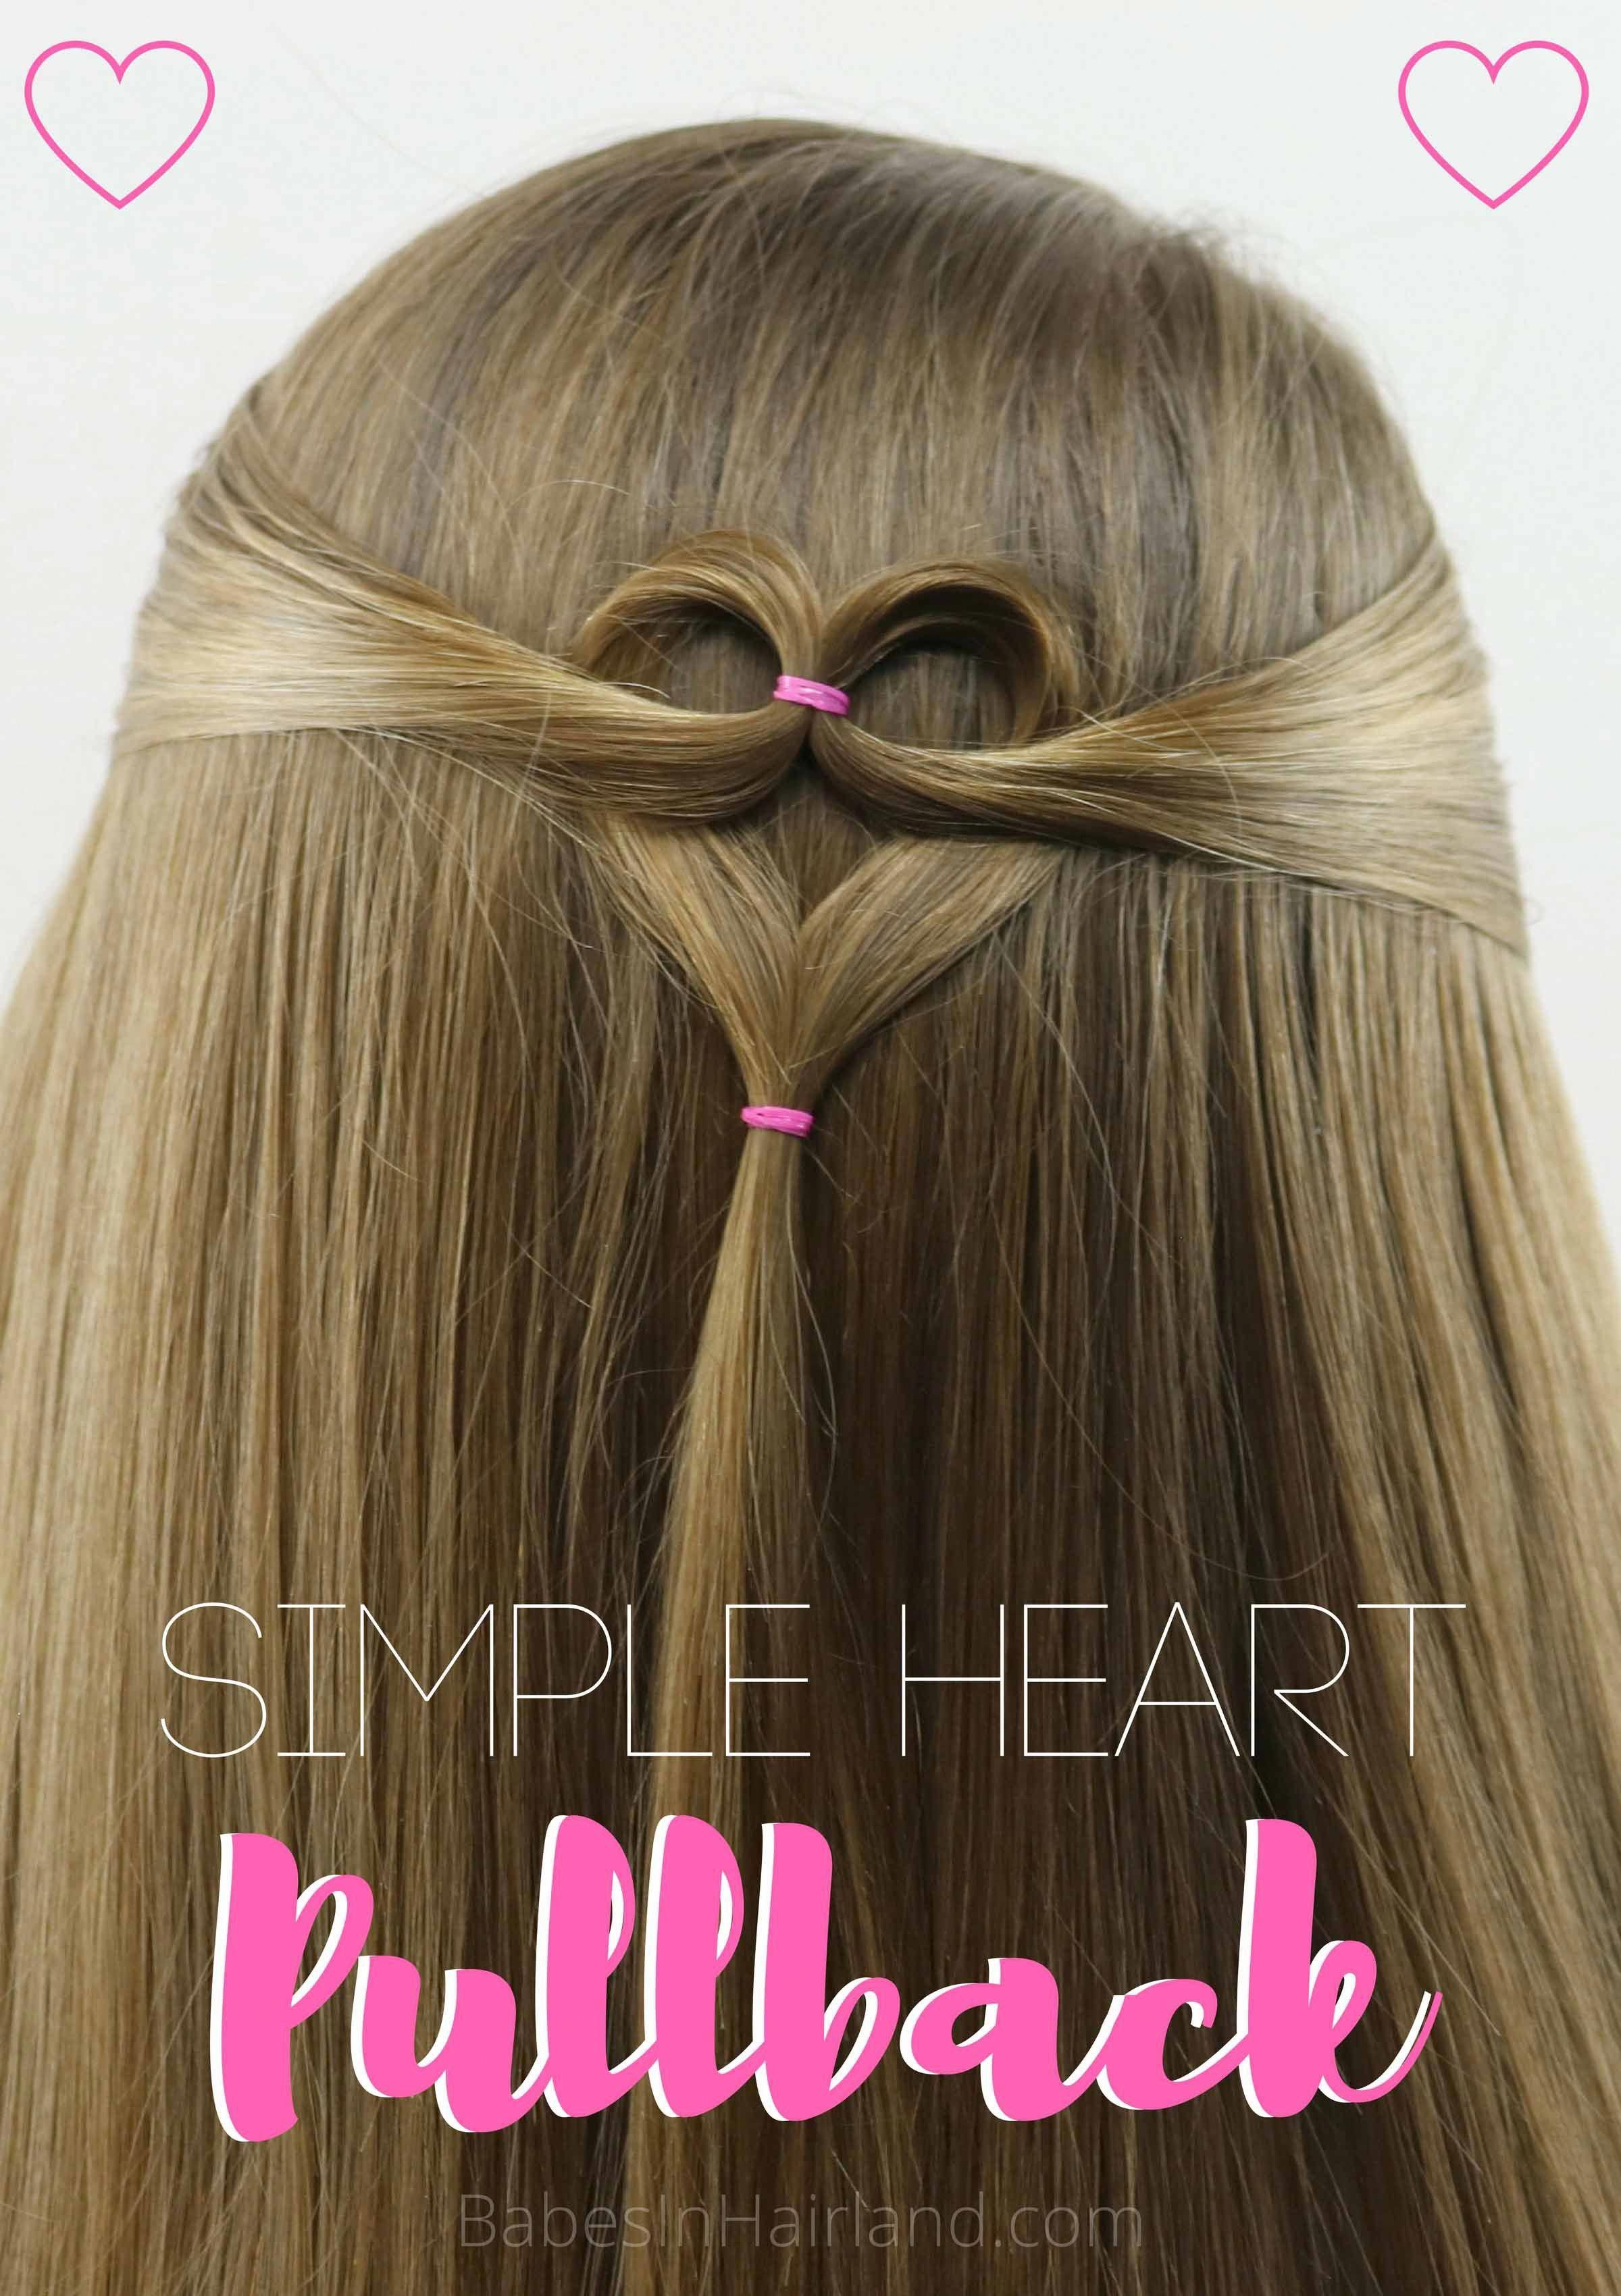 Triple Heart Pullback | Cute & Simple Valentine's Day Hairstyle - Triple Heart Pullback | Cute & Simple Valentine's Day Hairstyle -   16 heart style Hair ideas